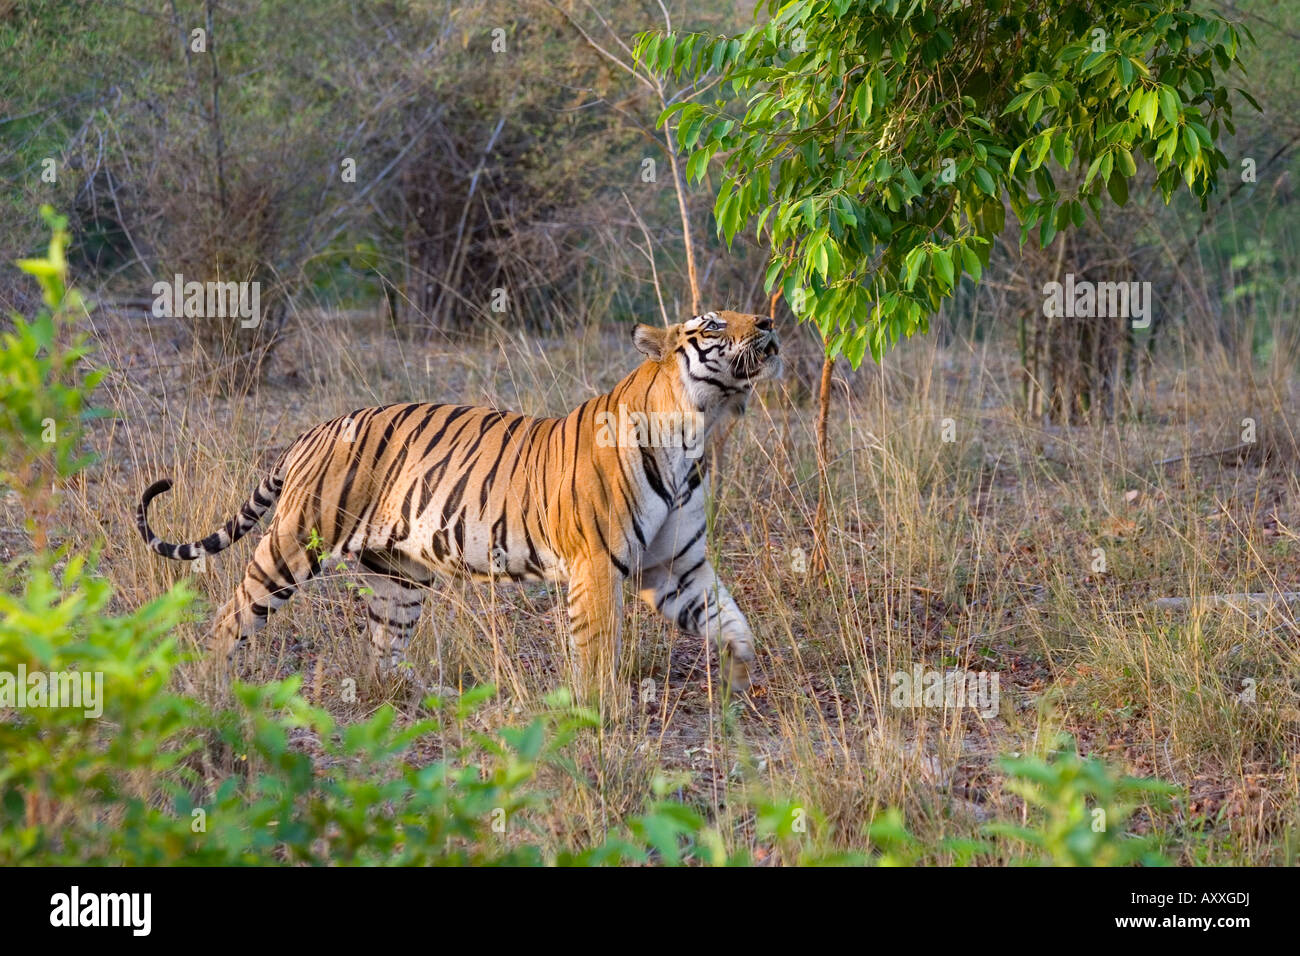 Bengal tiger, (Panthera tigris), Bandhavgarh, Madhya Pradesh, India Stock Photo